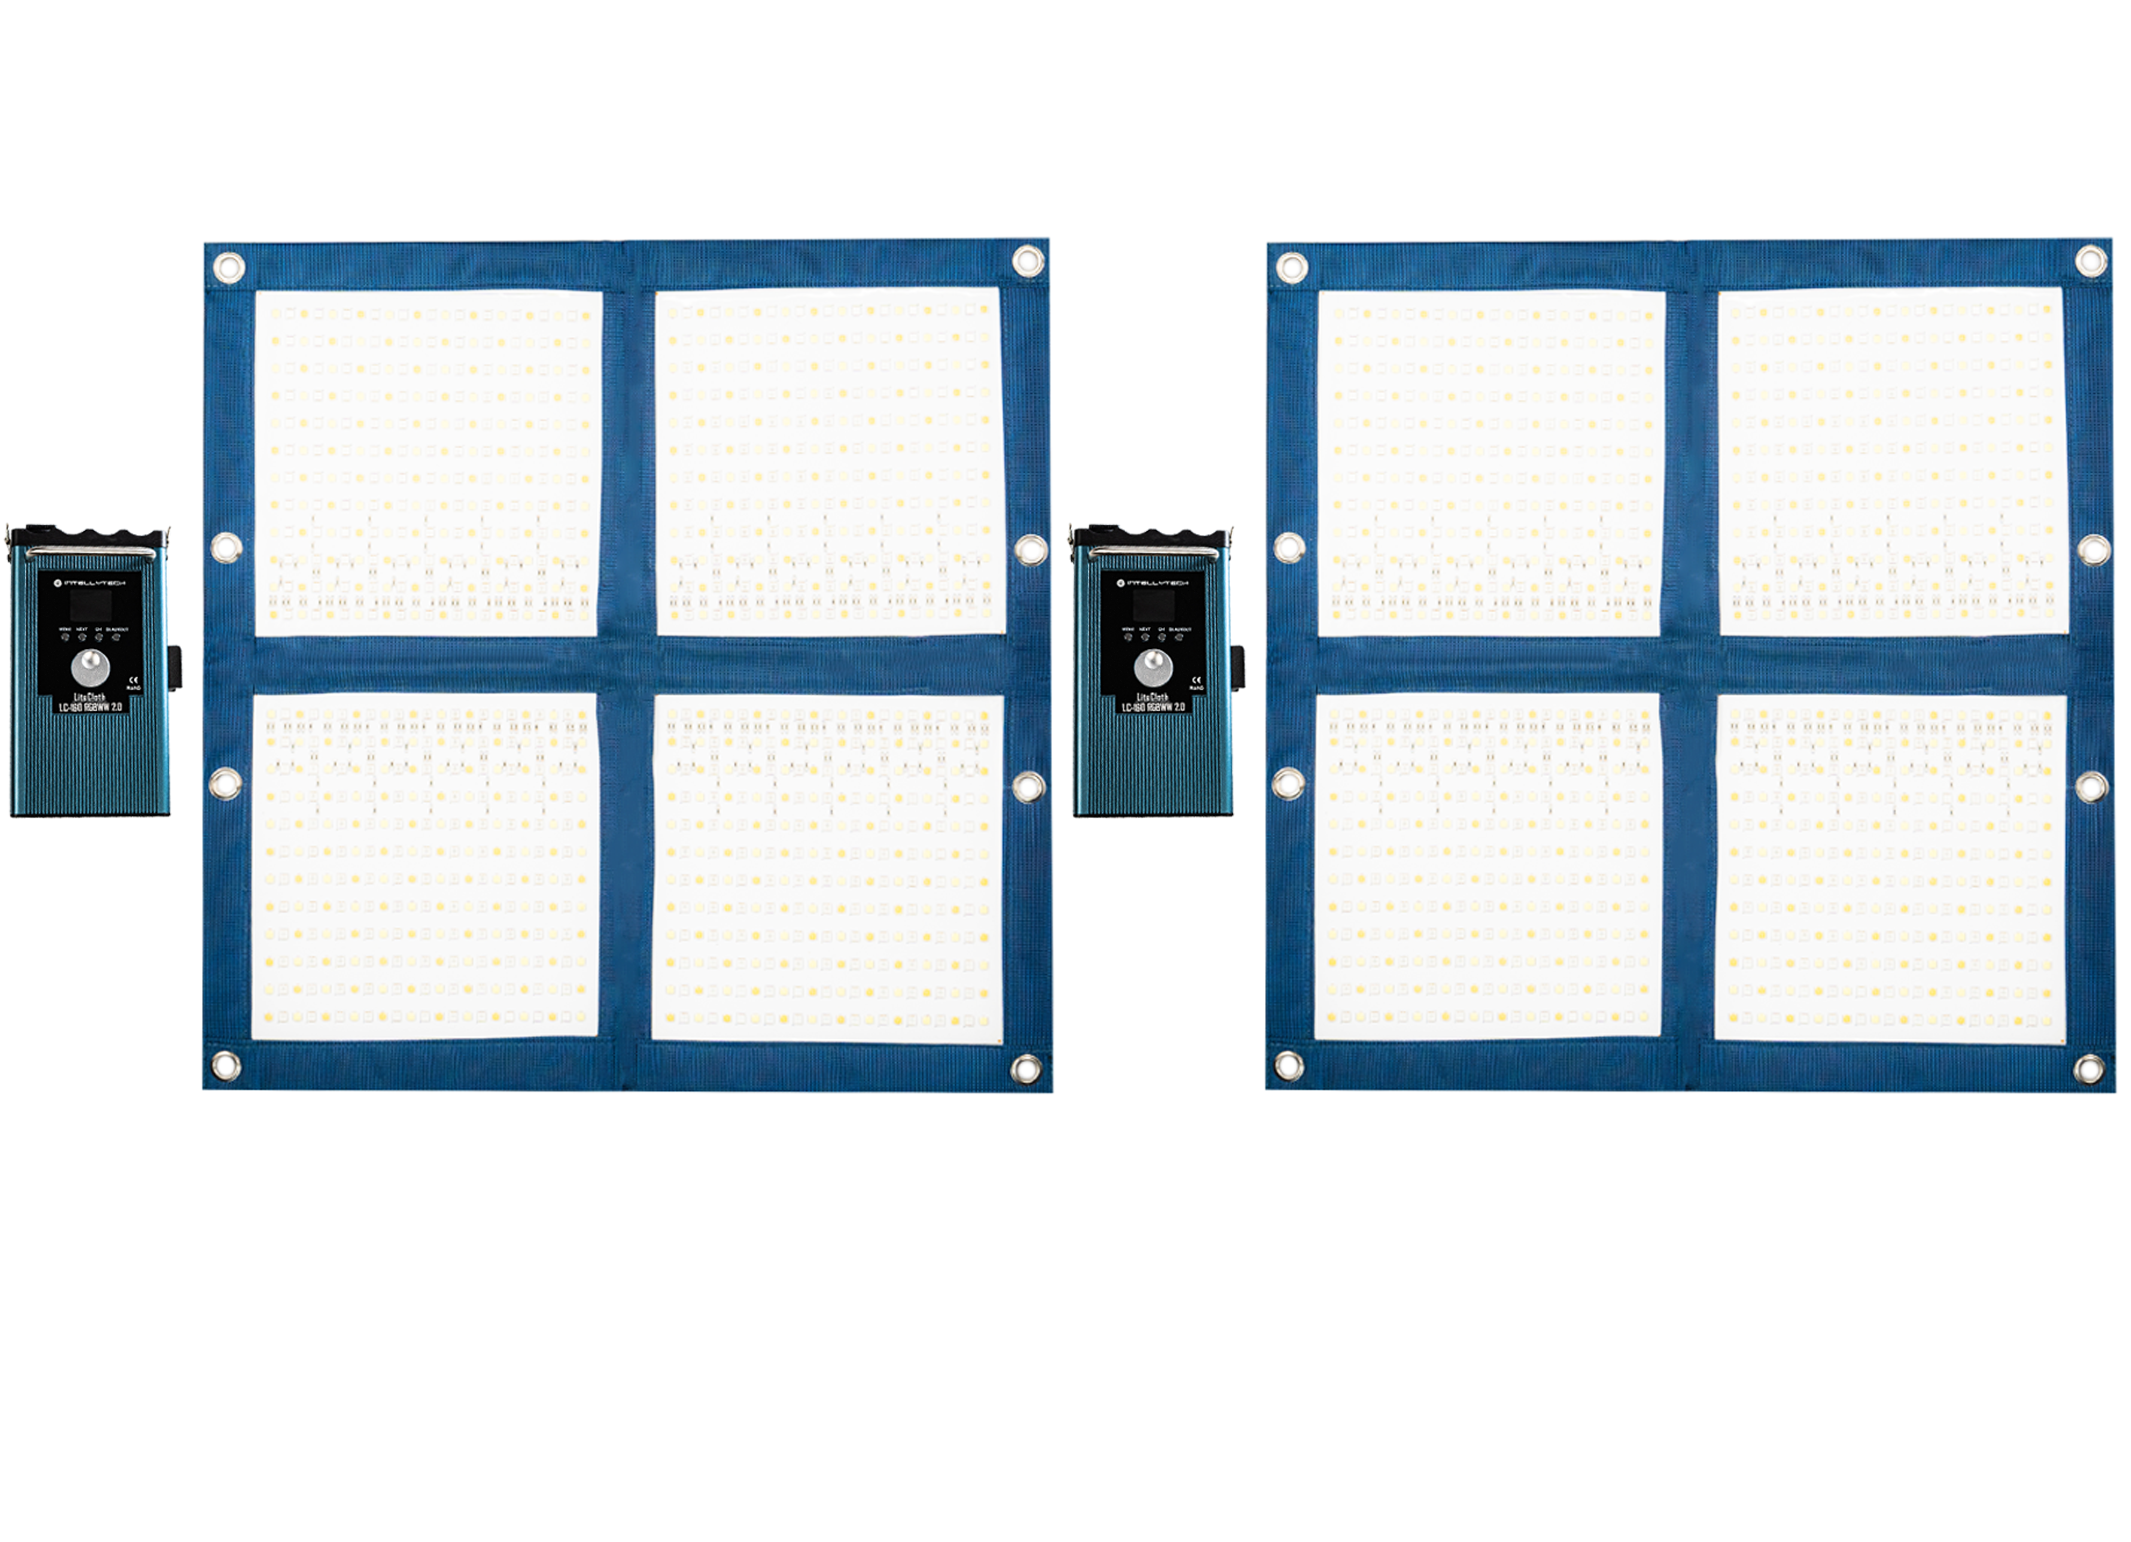 2 Light Kit - LiteCloth LC-160RGBWW 2.0 - 2x2 Foldable LED Mat Kit